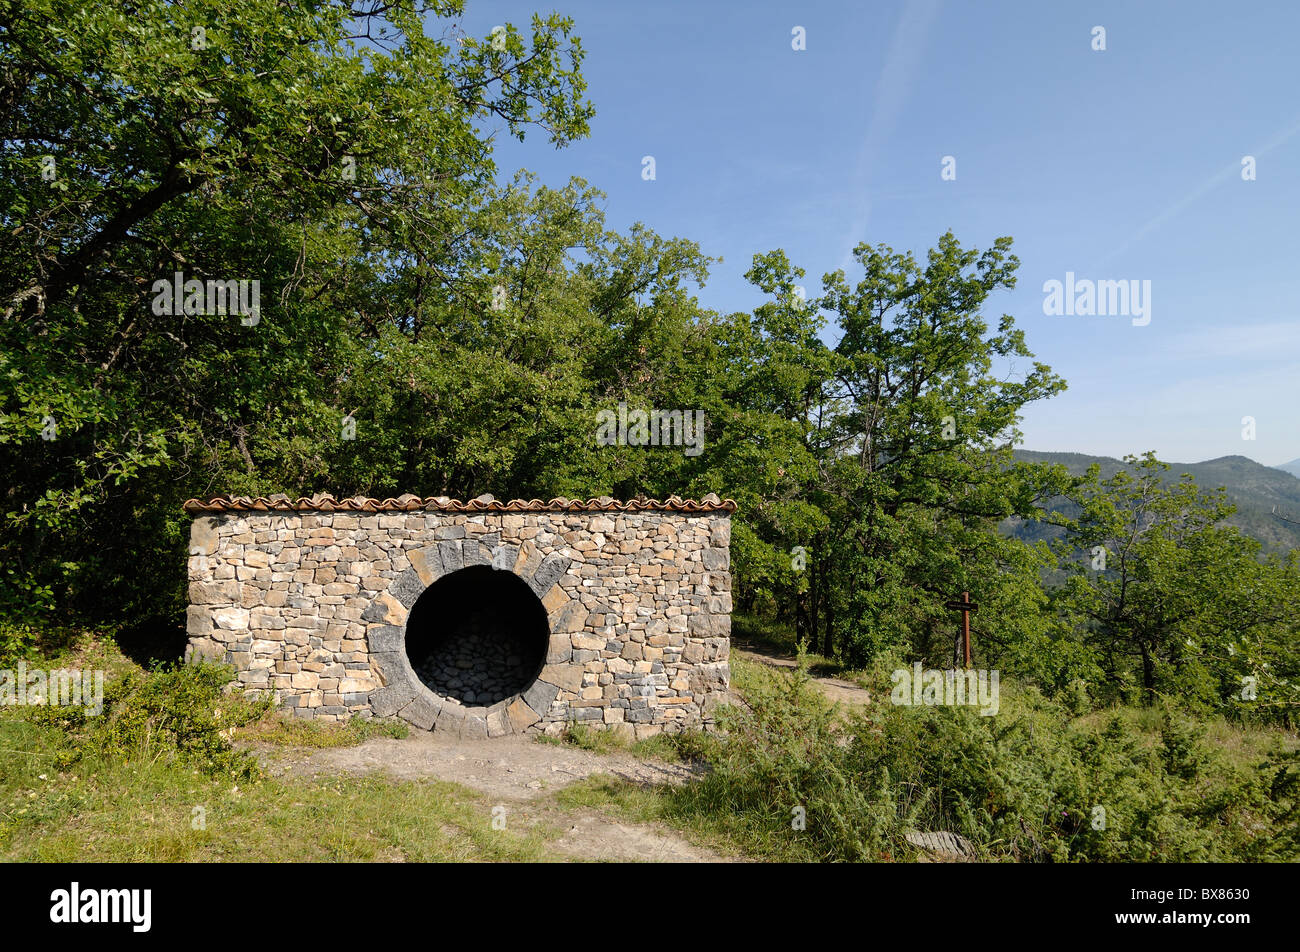 Andy Goldsworthy, Stone Sculpture Land Art, Refuge d'art ou cabane en pierre sèche à l'ouverture circulaire, près de Digne, Provence, France Banque D'Images